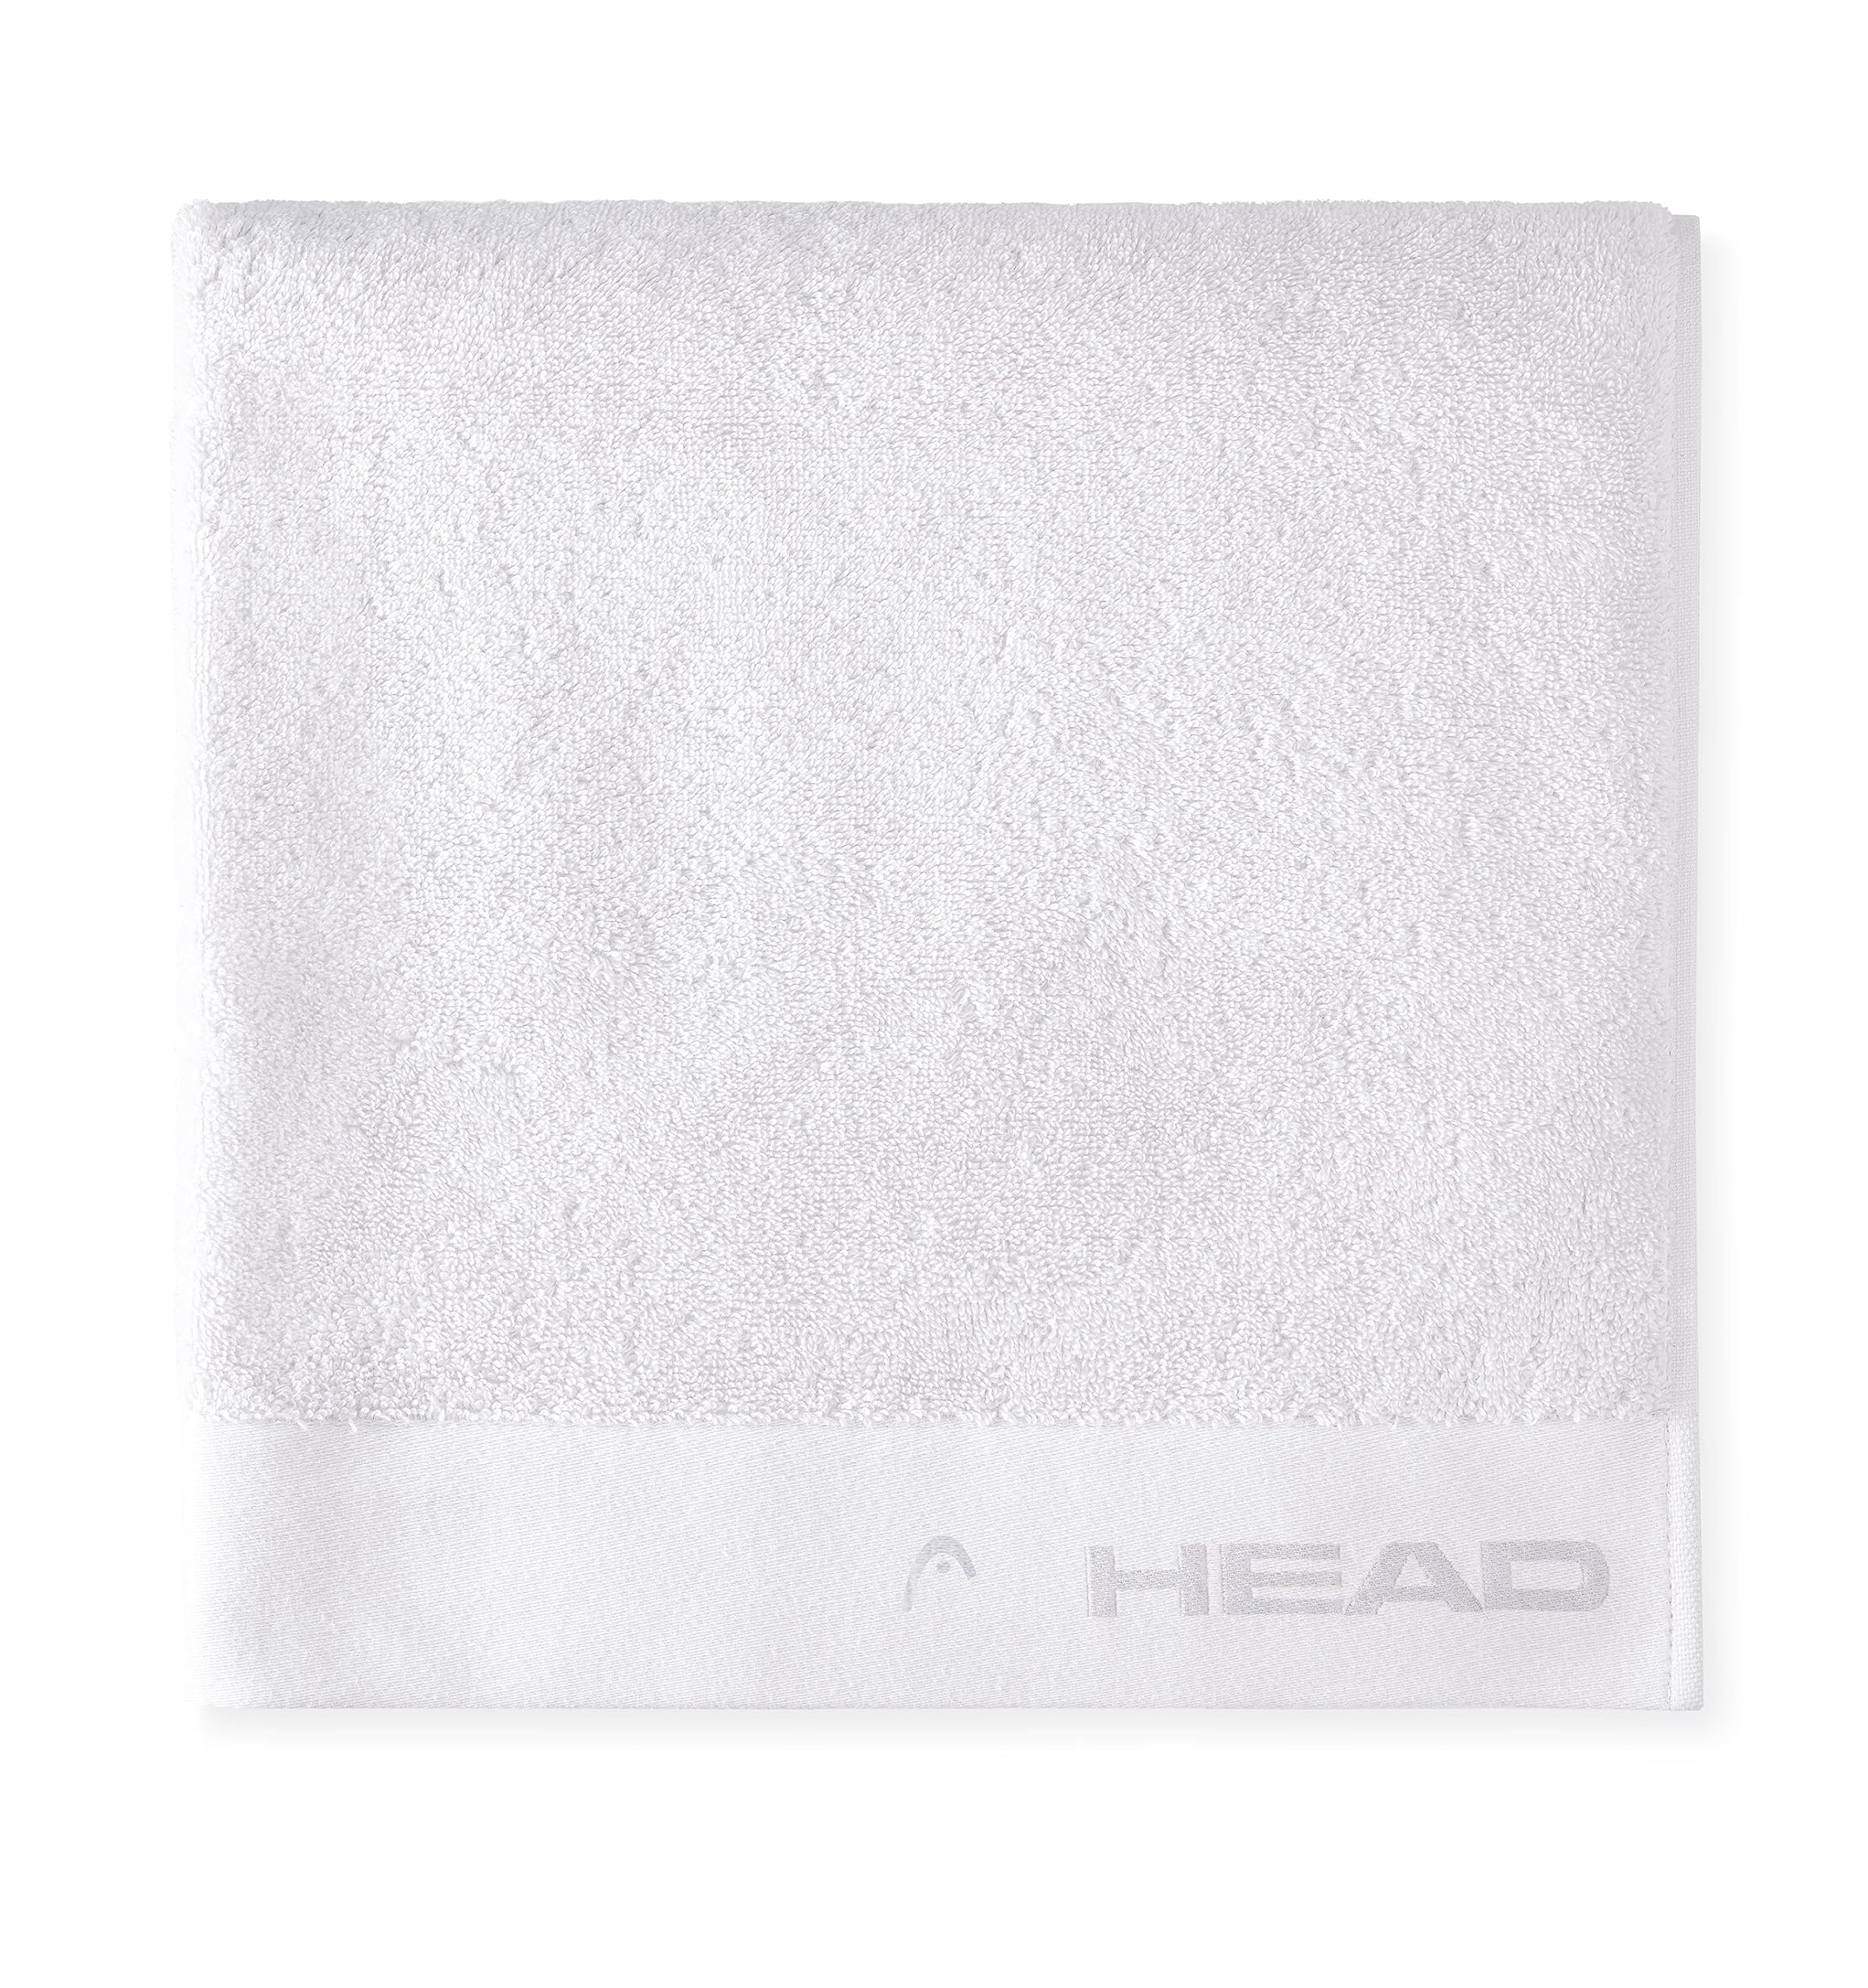 HEAD Dynamic - Handtuch Saunatuch Zertifiziertem Baumwollfrottee Handtücher, Fitness Handtuch Set, Saunakilt Damen und Herren, Duschtuch 70x140 Weiche, Leichte Schnell Trocknende, Saugfähiges Badetuch